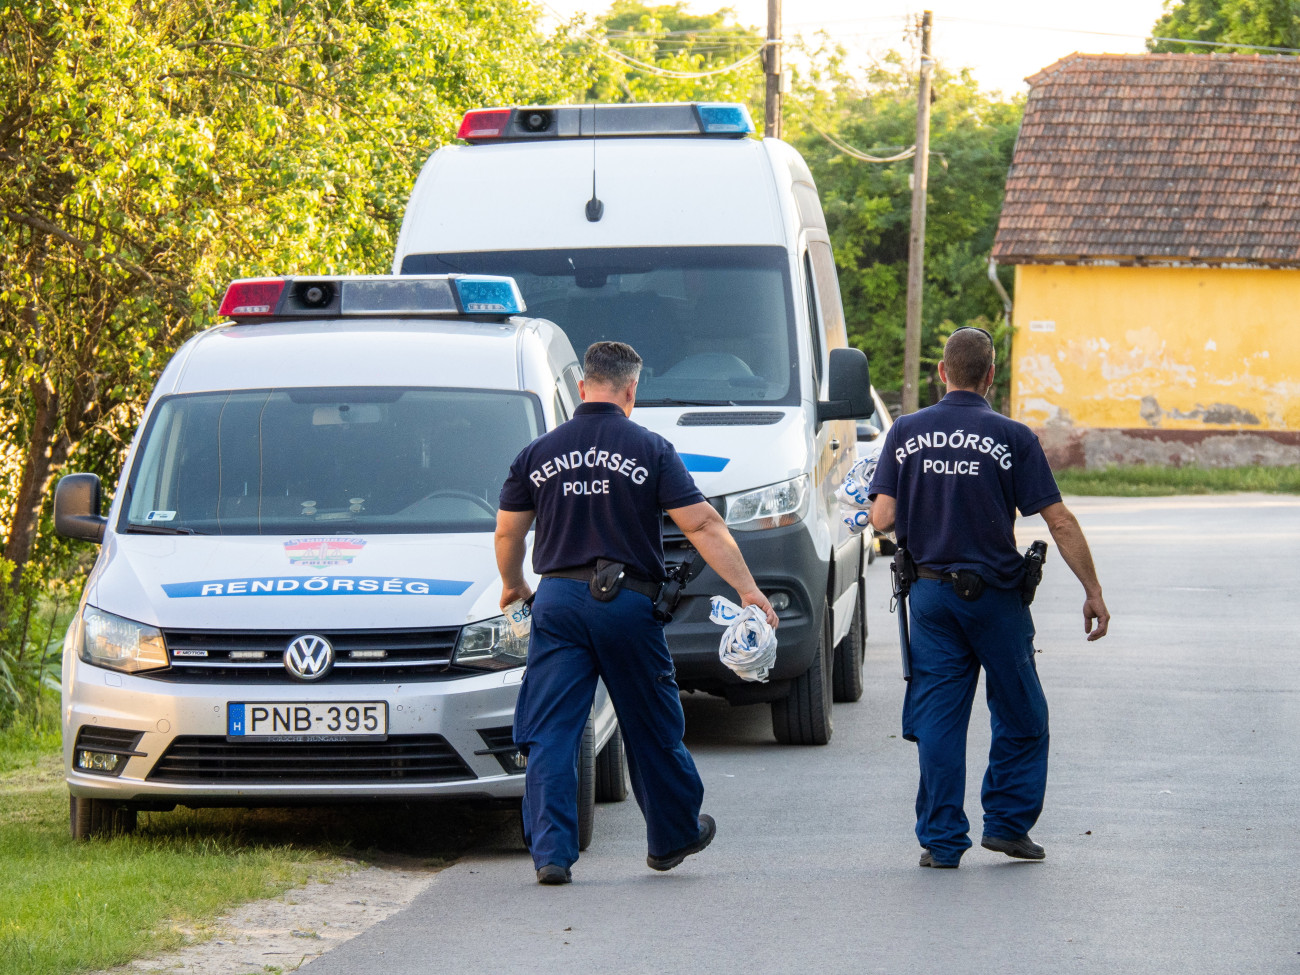 Jánoshalma, 2023. június 19.
Rendőrök és rendőrautók 2023. június 18-án Jánoshalmán, ahol holtan találtak egy idős nőt. A 80 éves áldozatra az ágyában talált rá a szomszédja június 18-án hajnalban. A nő meggyilkolásával egy 23 éves férfit gyanúsítanak, akit a rendőrök őrizetbe vettek és kezdeményezték a letartóztatását.
MTI/Donka Ferenc